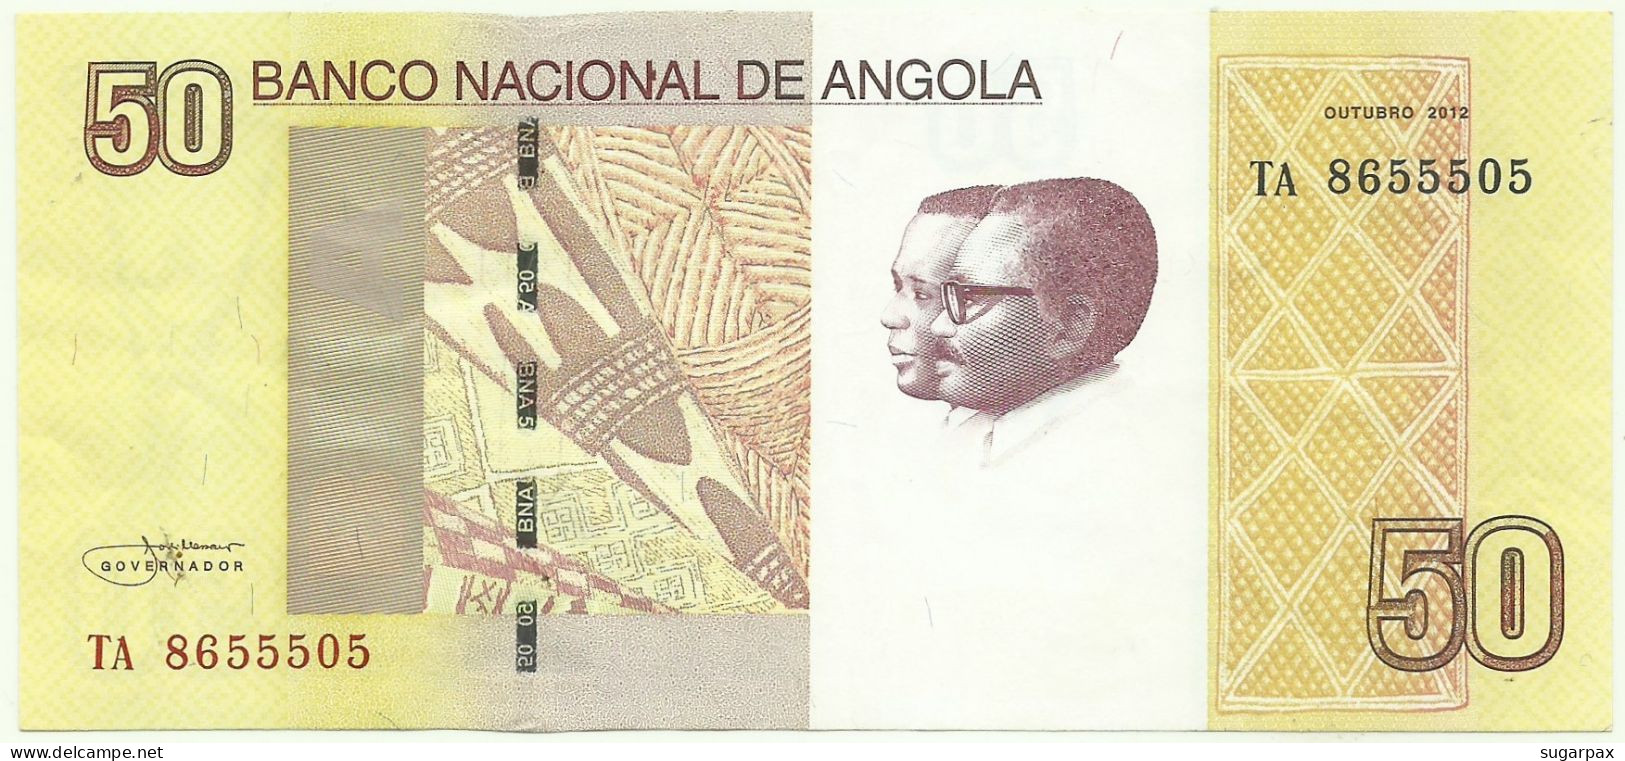 Angola - 50 Kwanzas - 2012 - Pick: 152 - Série TA - José Eduardo Dos Santos E Agostinho Neto - Angola